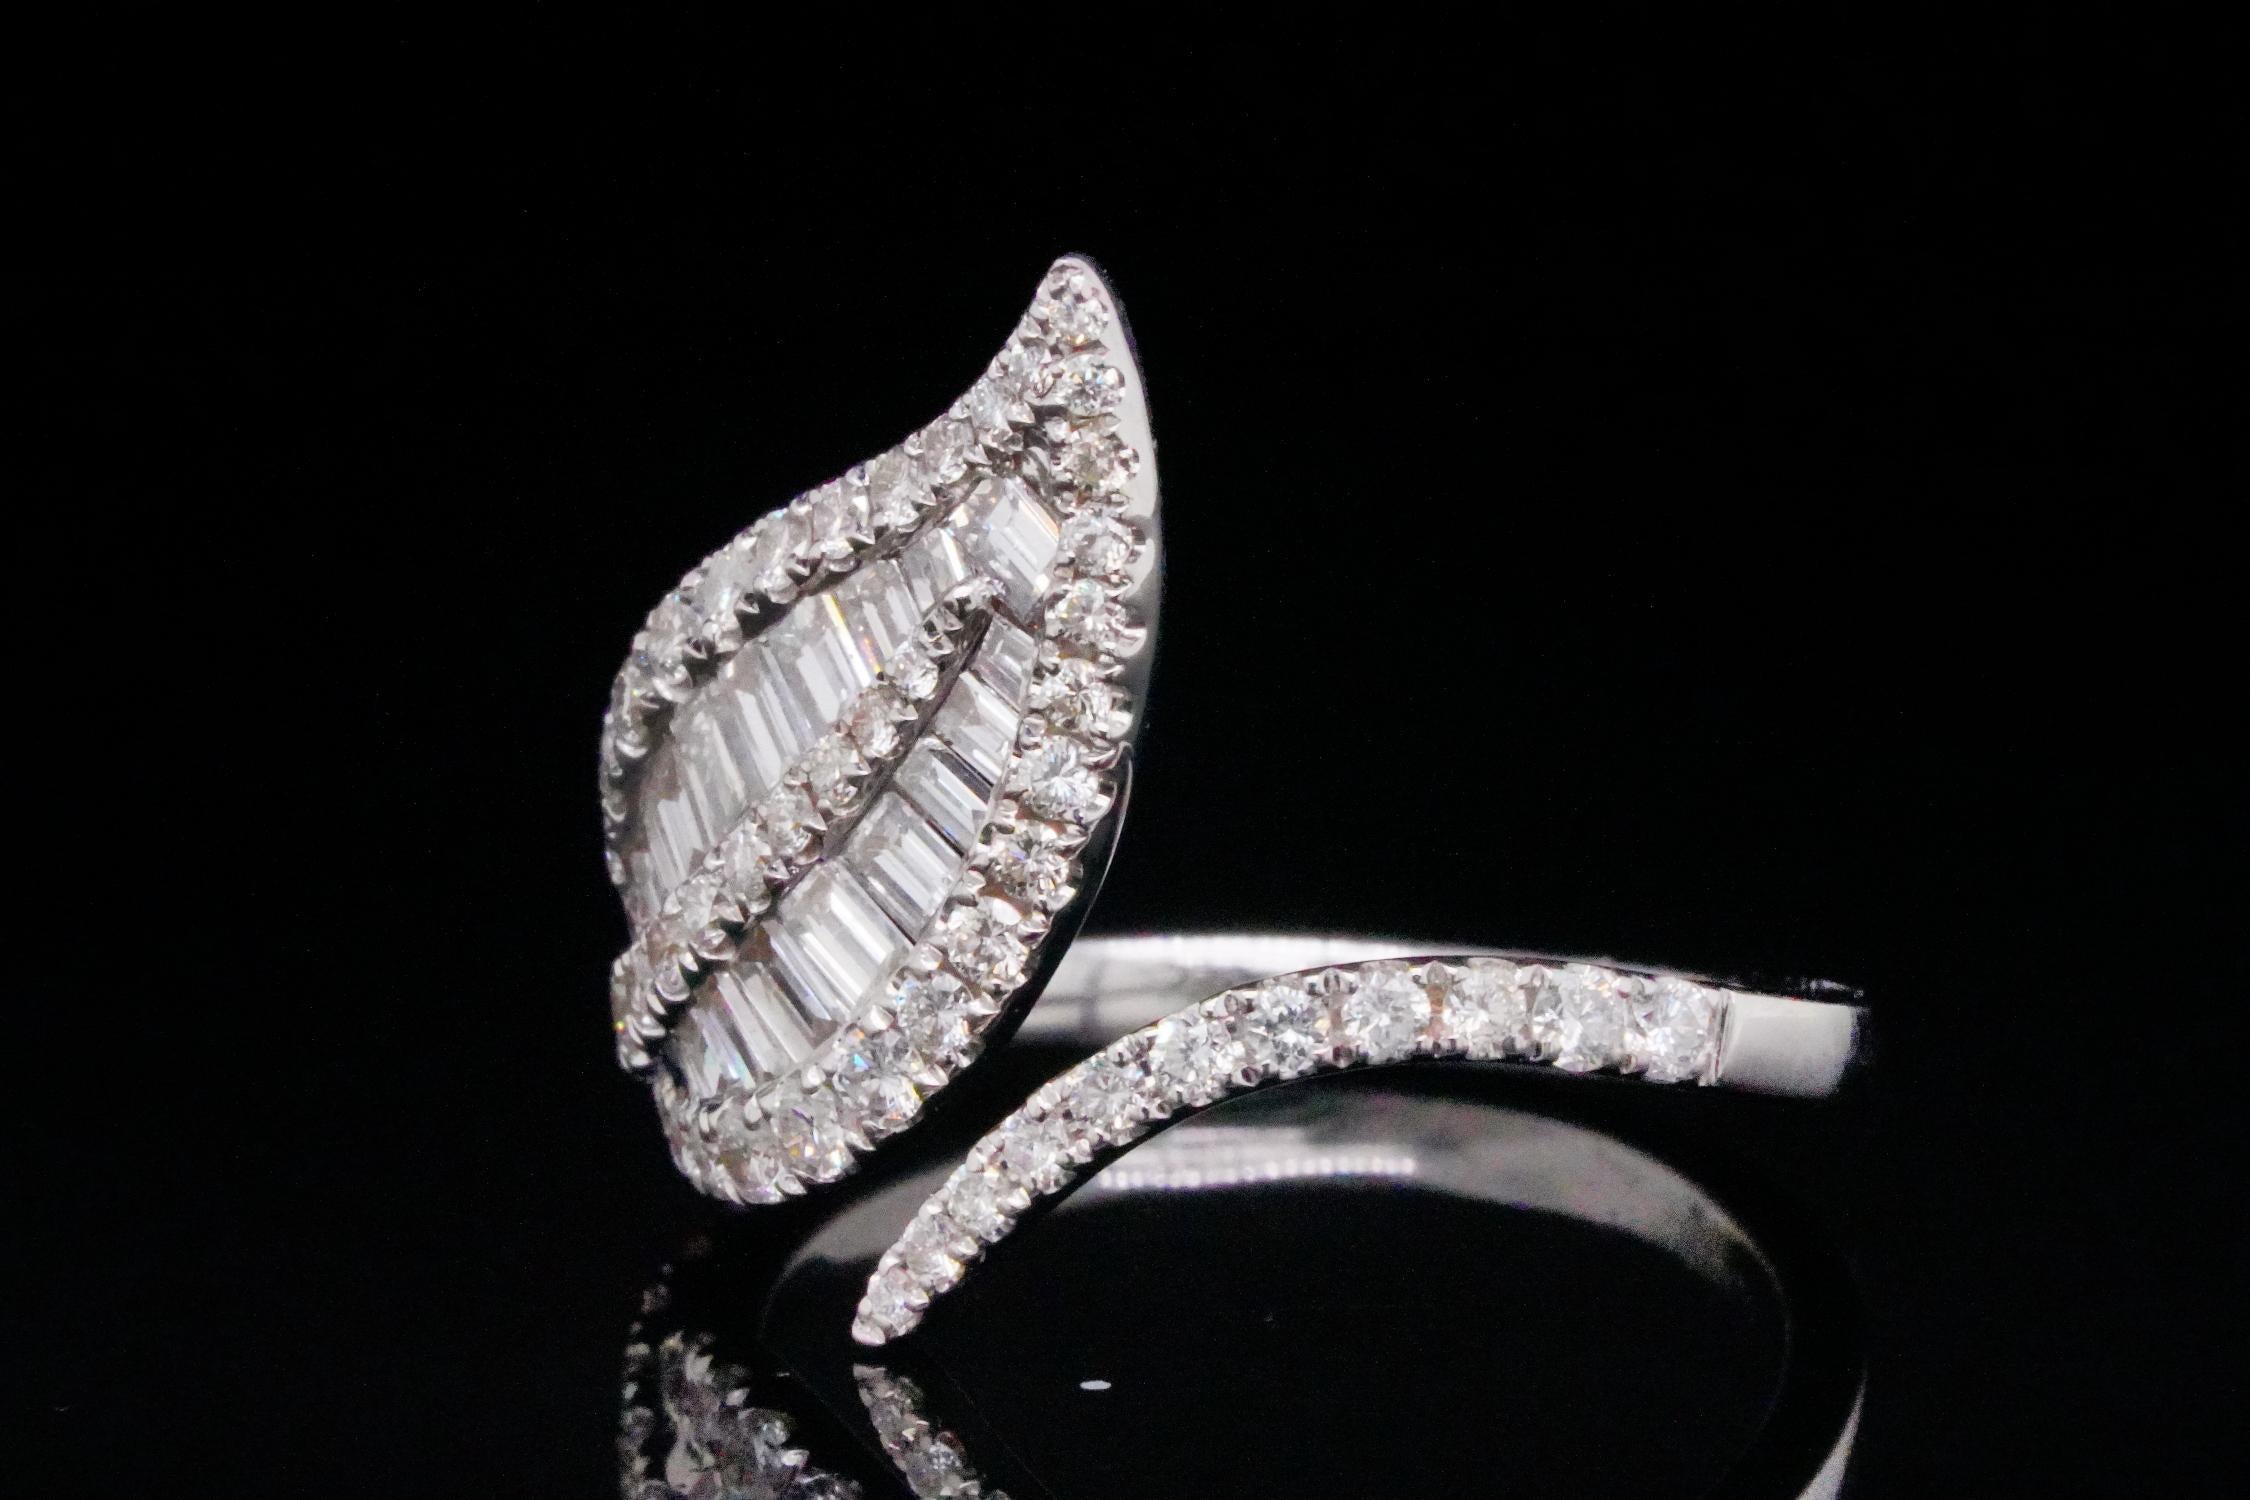 Sehr hübsch und funkelnden naturalistischen Blatt Form Ring. 1,10ctw VS1-VS2/G-H Diamant und 18K Weißgold Leaf Ring - Dieser schöne Ring wurde fein aus massivem 18k Weißgold gefertigt und hat ein elegantes Design in Form eines Blattes auf einer